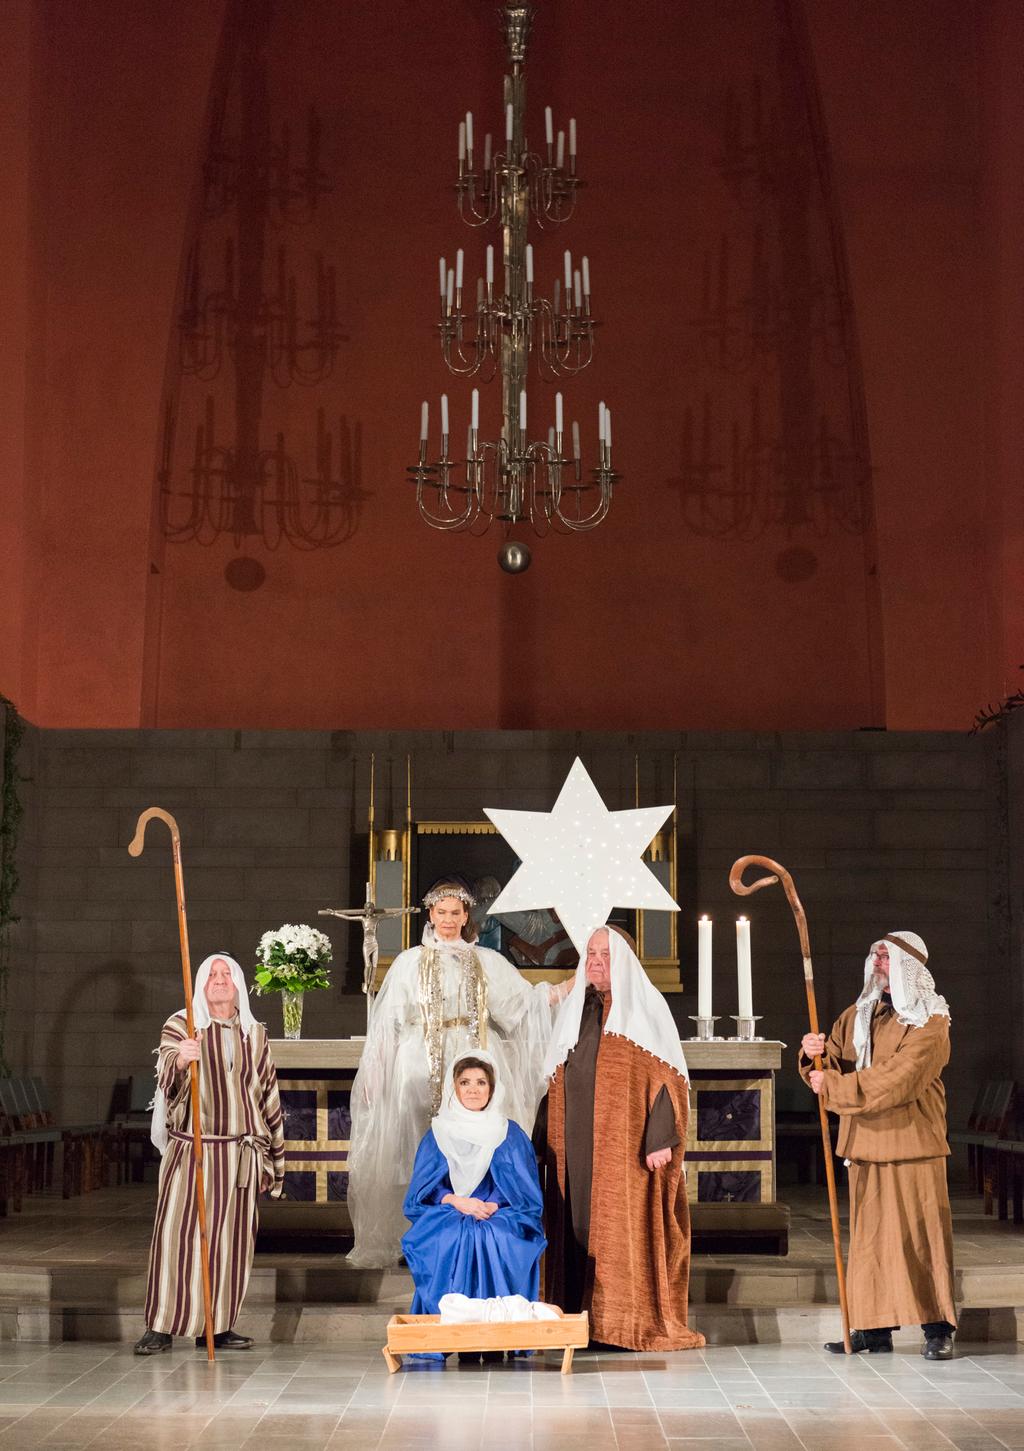 Tule katsomaan perinteinen Joulumysteerio Mikael Agricolan kirkkoon ke 19.12. klo 19 ja ole osa joulun tapahtumia.